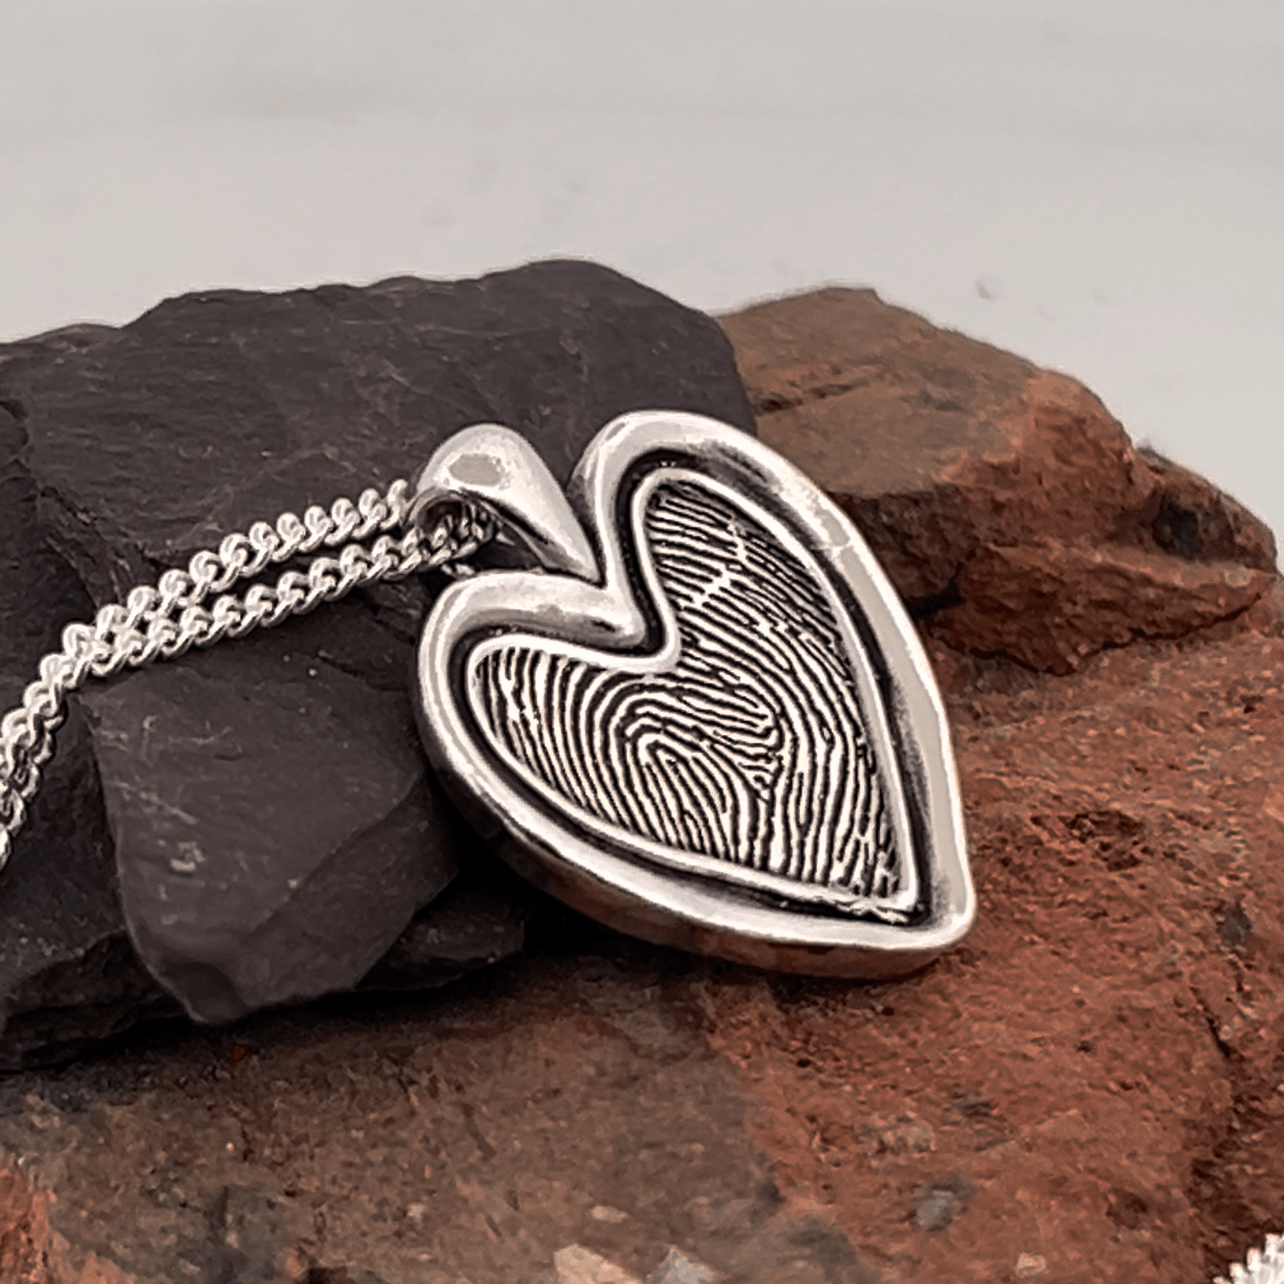 Fingerprint Necklace | Rustic Heart Pendant Pendant by Chris Parry Jewellery